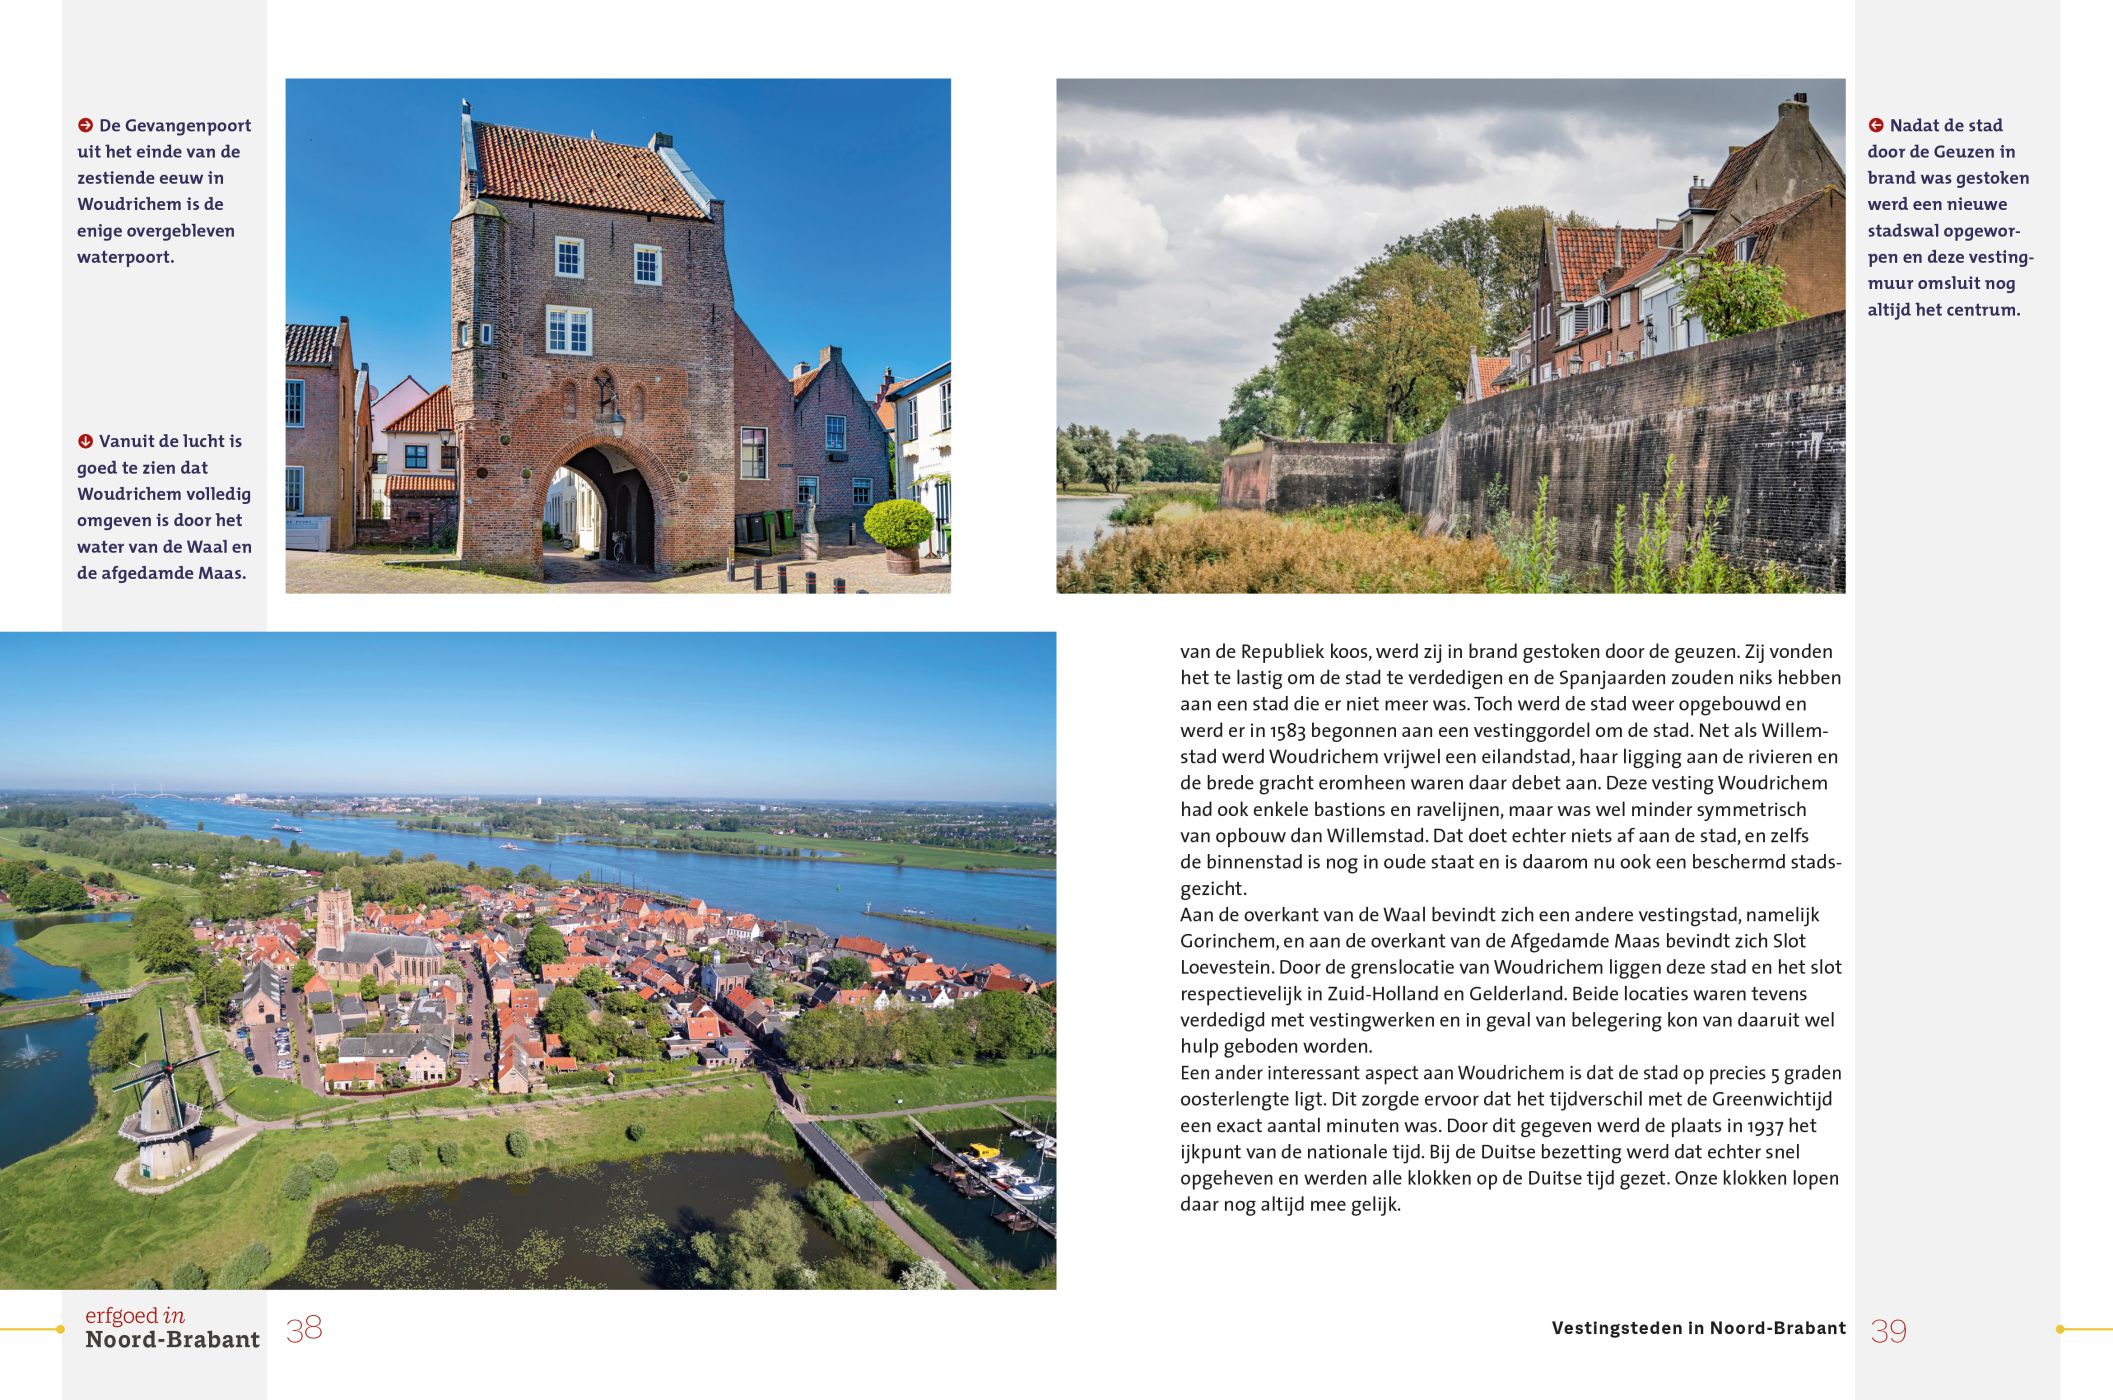 Inkijkexemplaar van het boek: <em>Erfgoed in Noord-Brabant. Vestingsteden langs de linie</em> - © Uitgeverij Matrijs